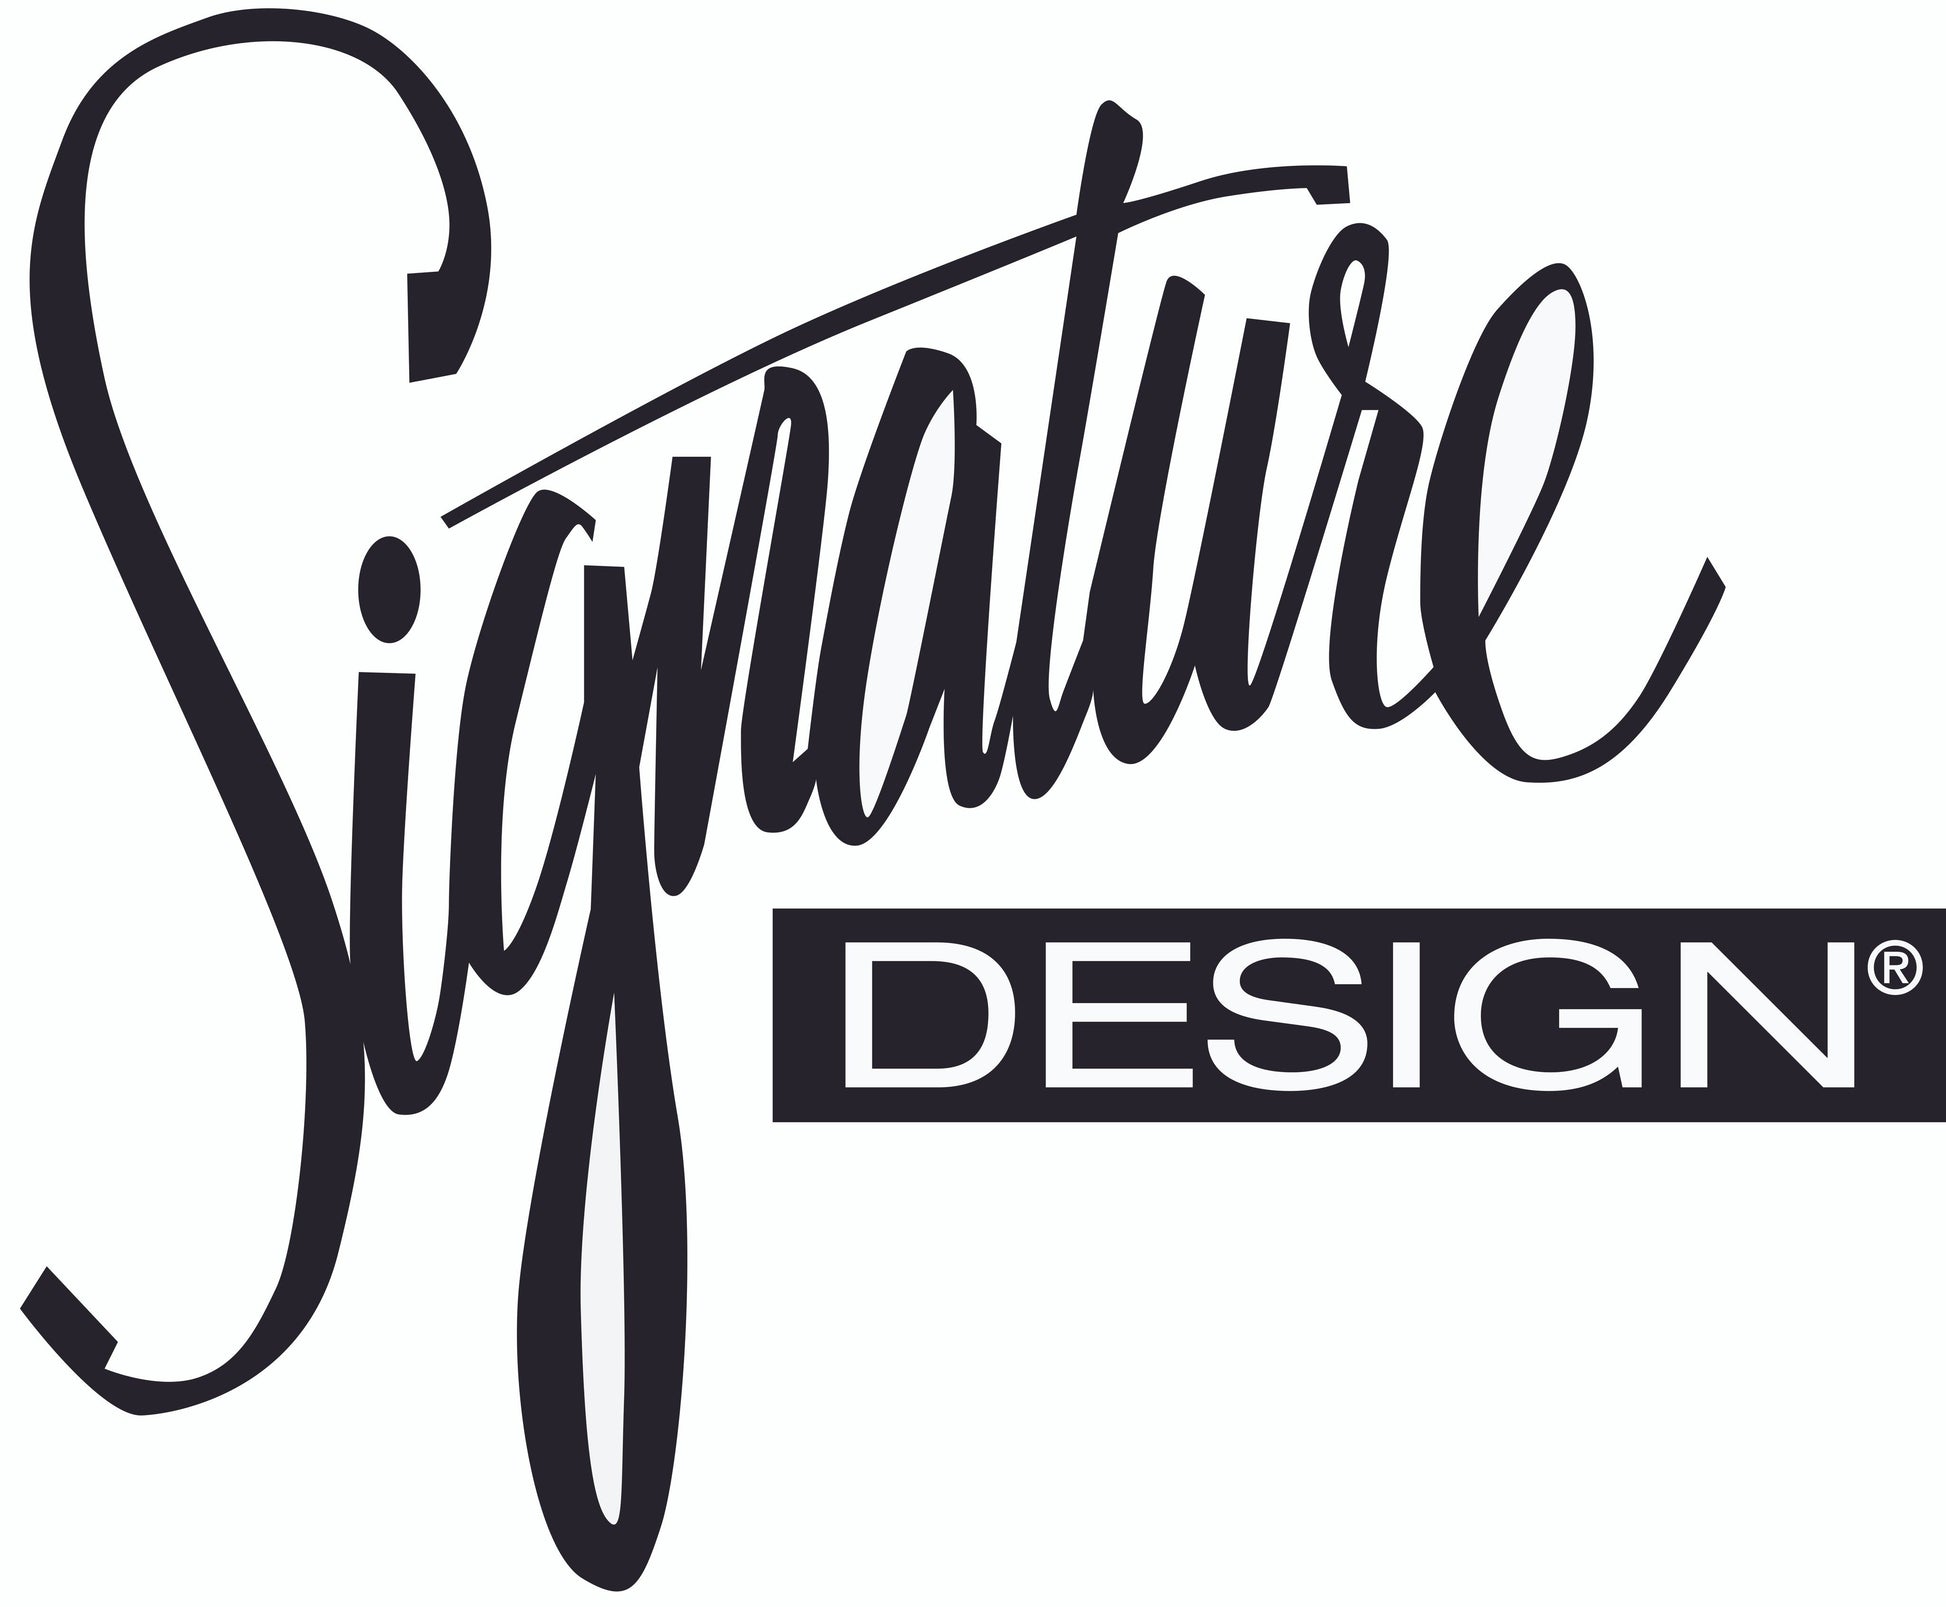 Gleston Sofa Signature Design by Ashley®